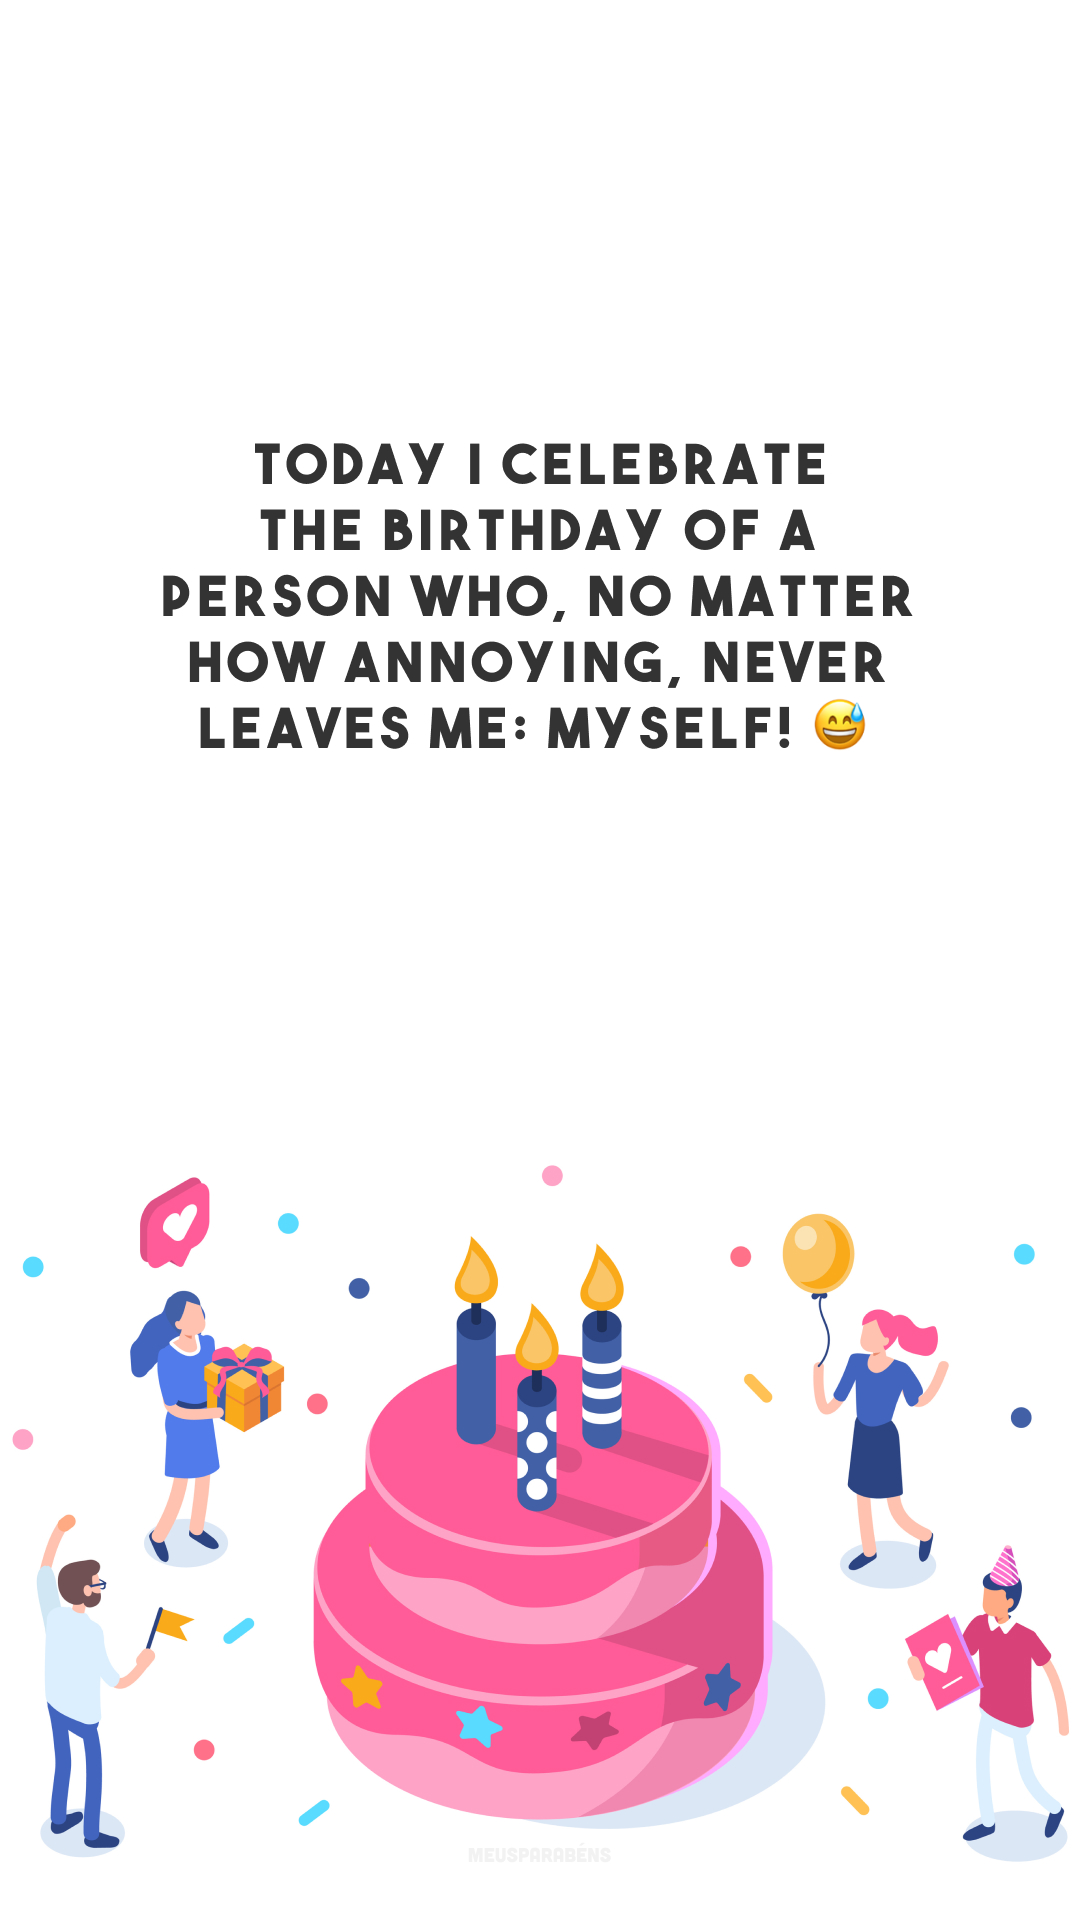 Today I celebrate the birthday of a person who, no matter how annoying, never leaves me: myself! 😅

<p>(Comemoro hoje o aniversário de uma pessoa que, por mais chata que seja, nunca me abandona: eu mesmo!)<p>